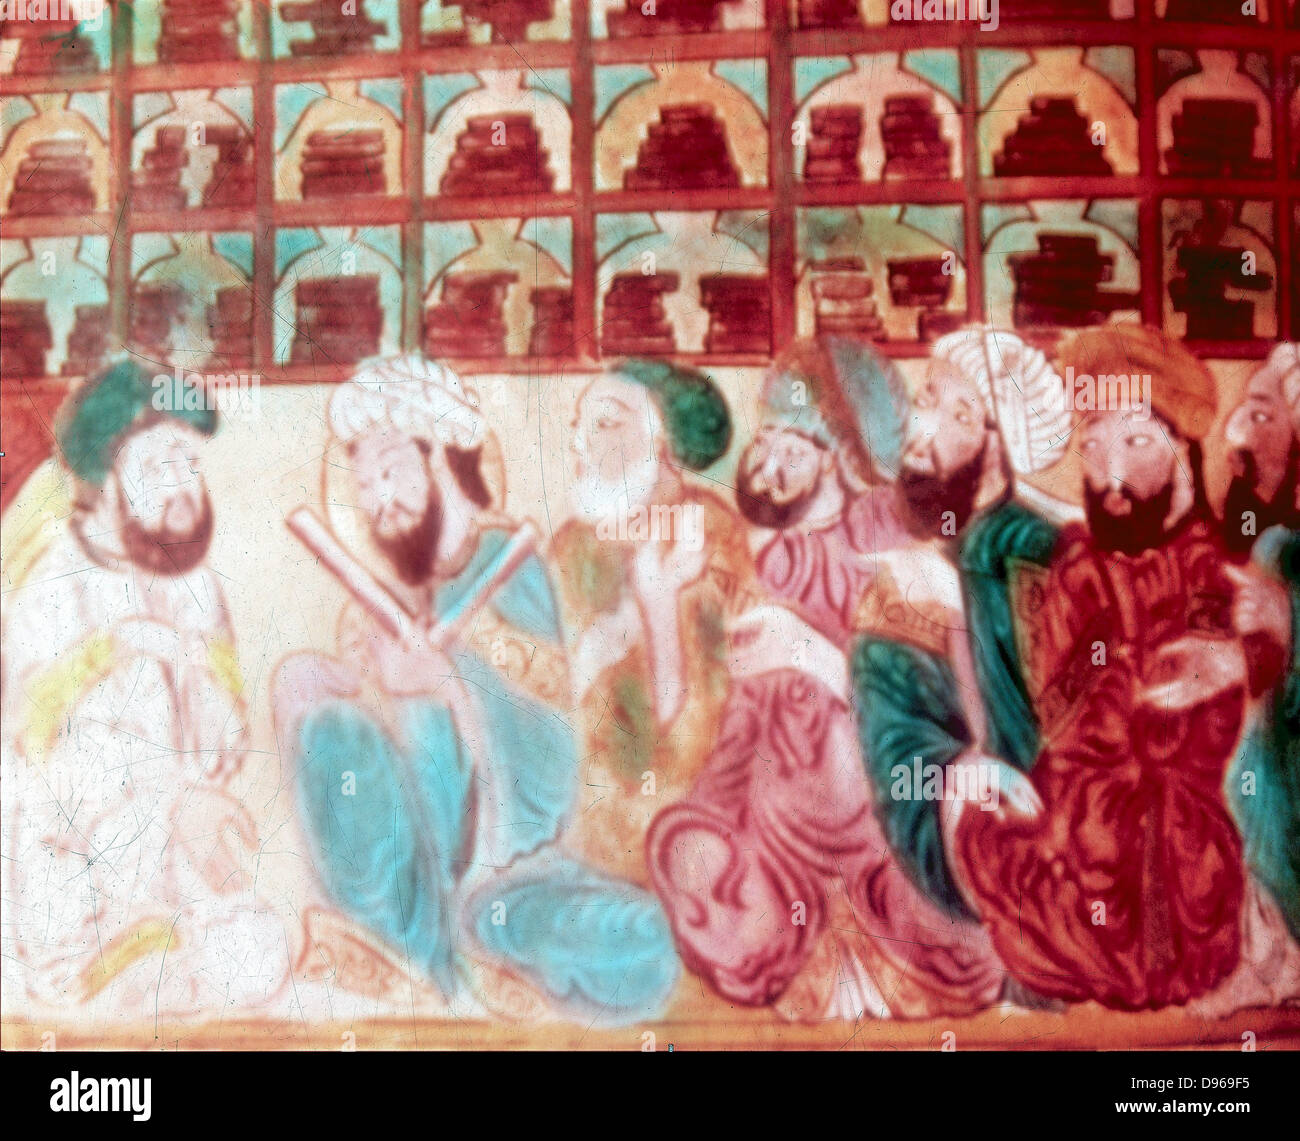 Wissenschaftler in die Wohnstätte der Weisheit, eine Akademie der Wissenschaften, Bagdad. Handschrift des 14. Jahrhunderts. Stockfoto